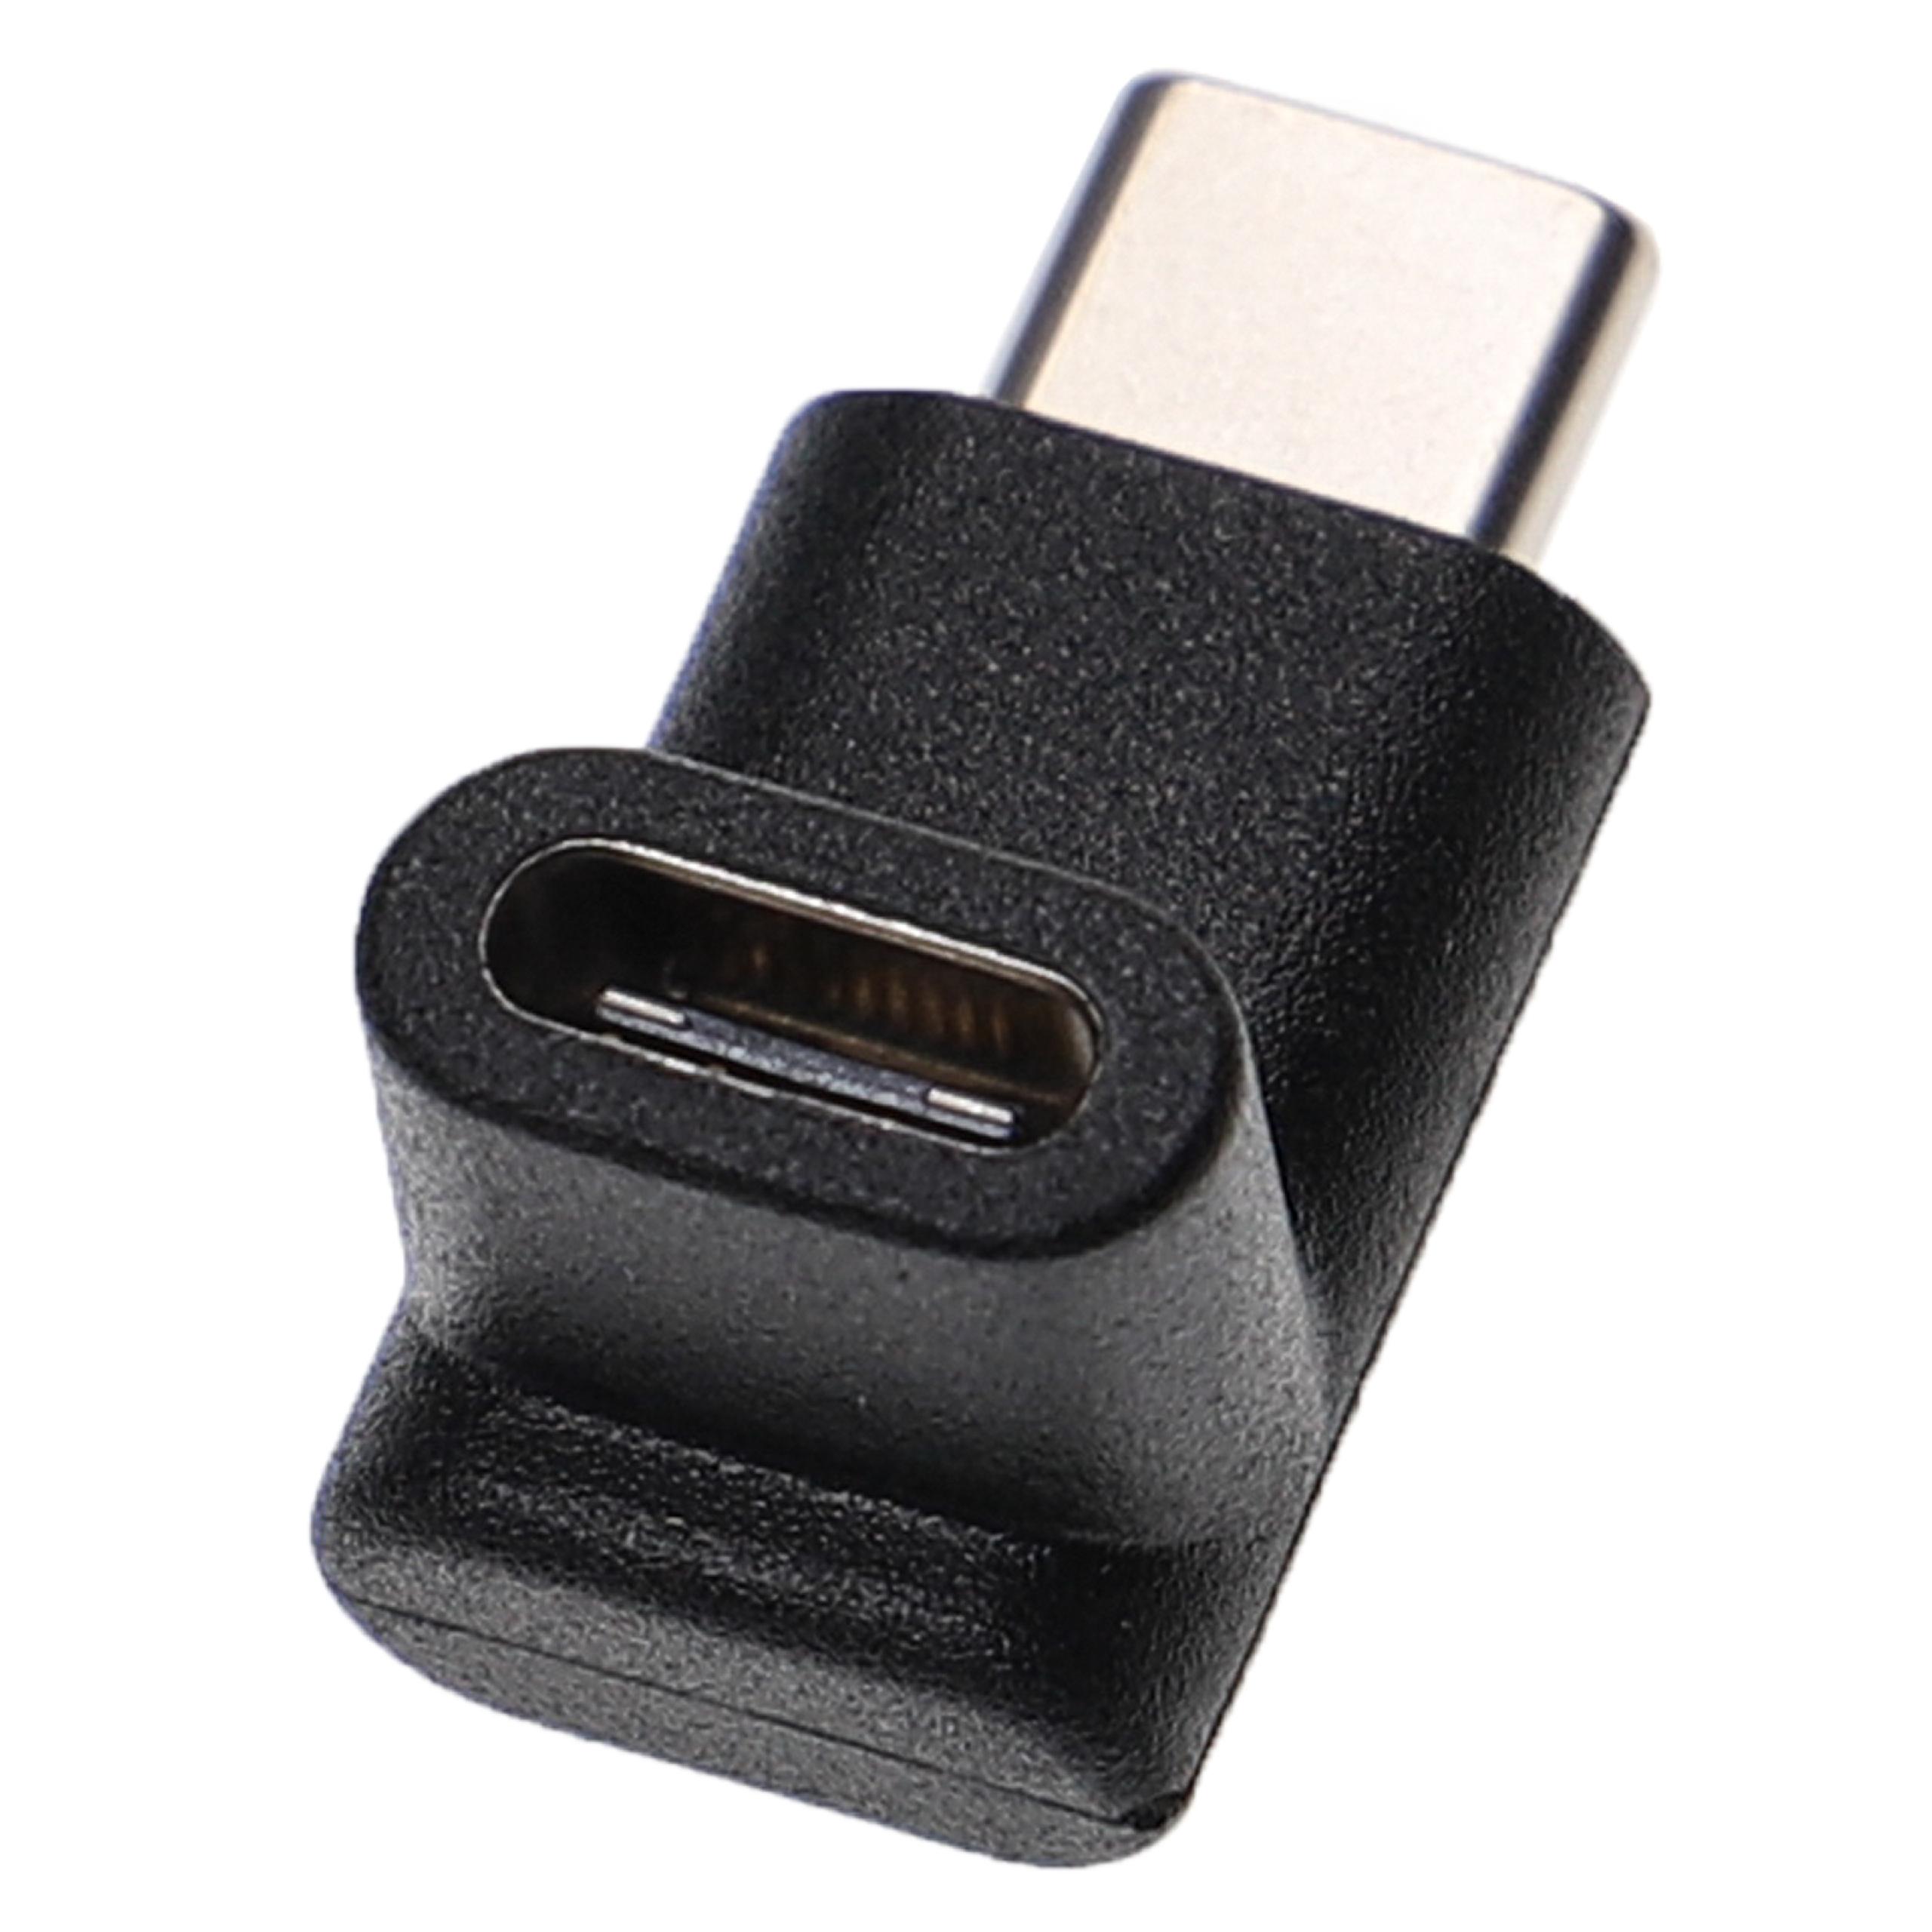 Adaptateur USB-C coudé à 90° - Adaptateur mâle vers femelle